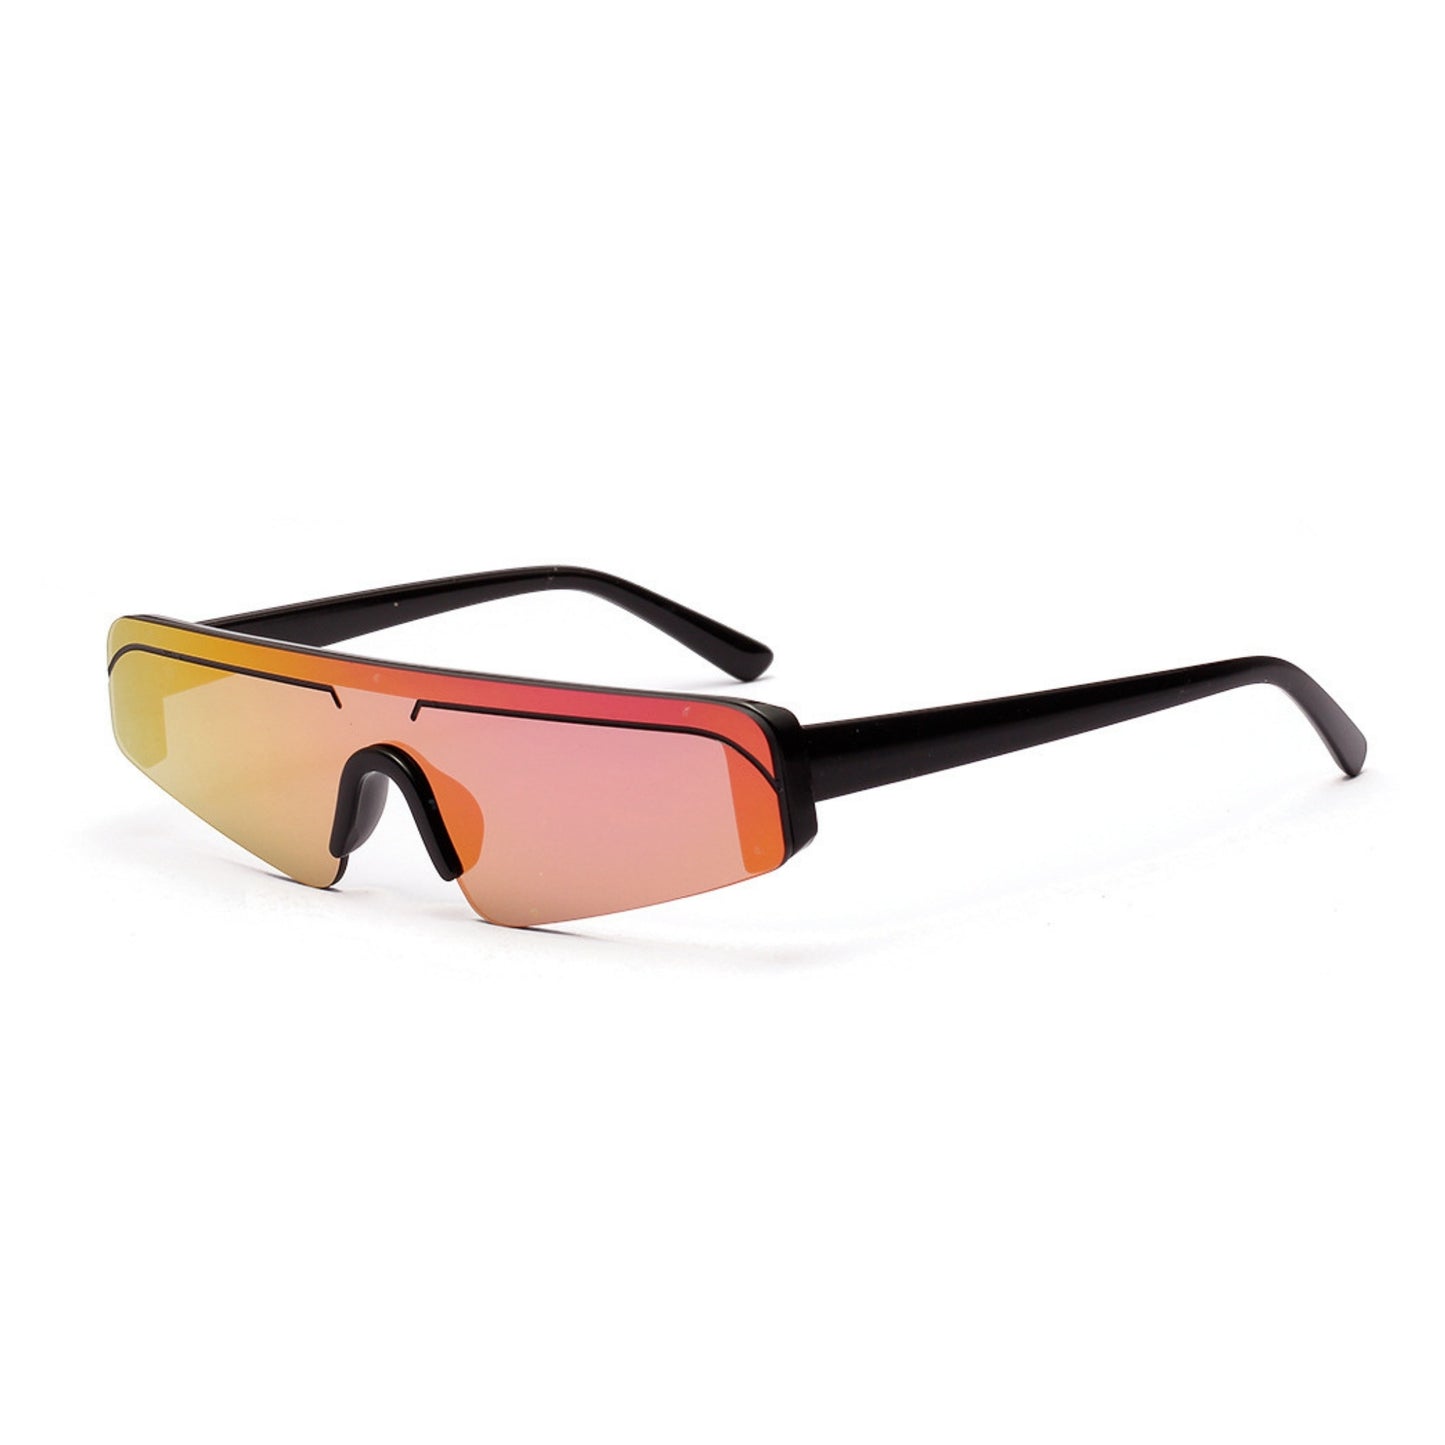 Γυαλιά ηλίου (Μάσκα) Miami της Exposure Sunglasses με προστασία UV400 με μαύρο σκελετό και μωβ φακό. Πλάγια προβολή